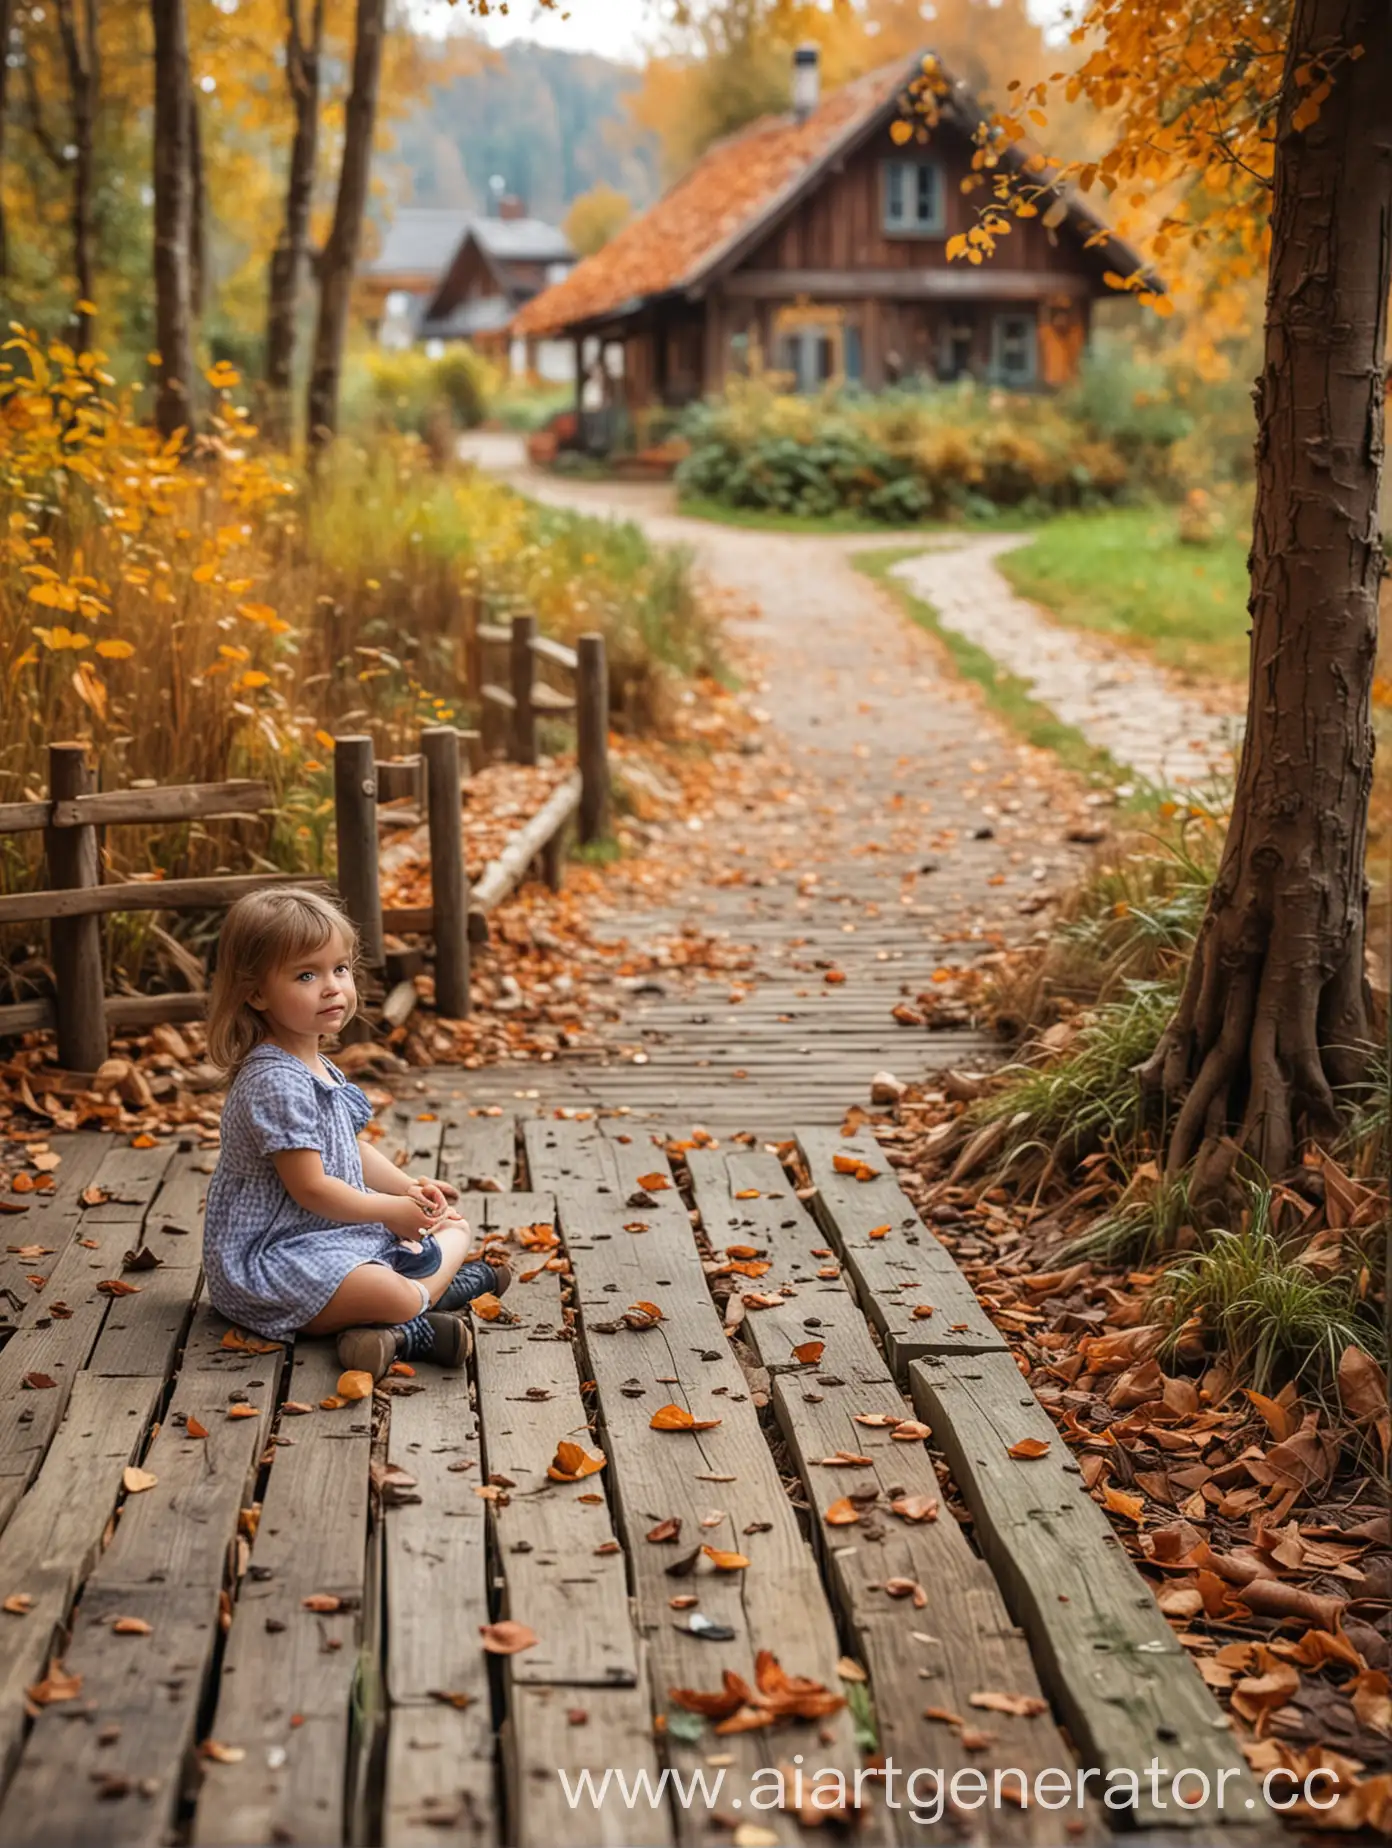 Маленькая девочка сидит на деревянной террасе, рядом сидит сенбернар, на фоне осенний лес и деревня, под ногами опавшие листья и трава, фон размыт, реалистично